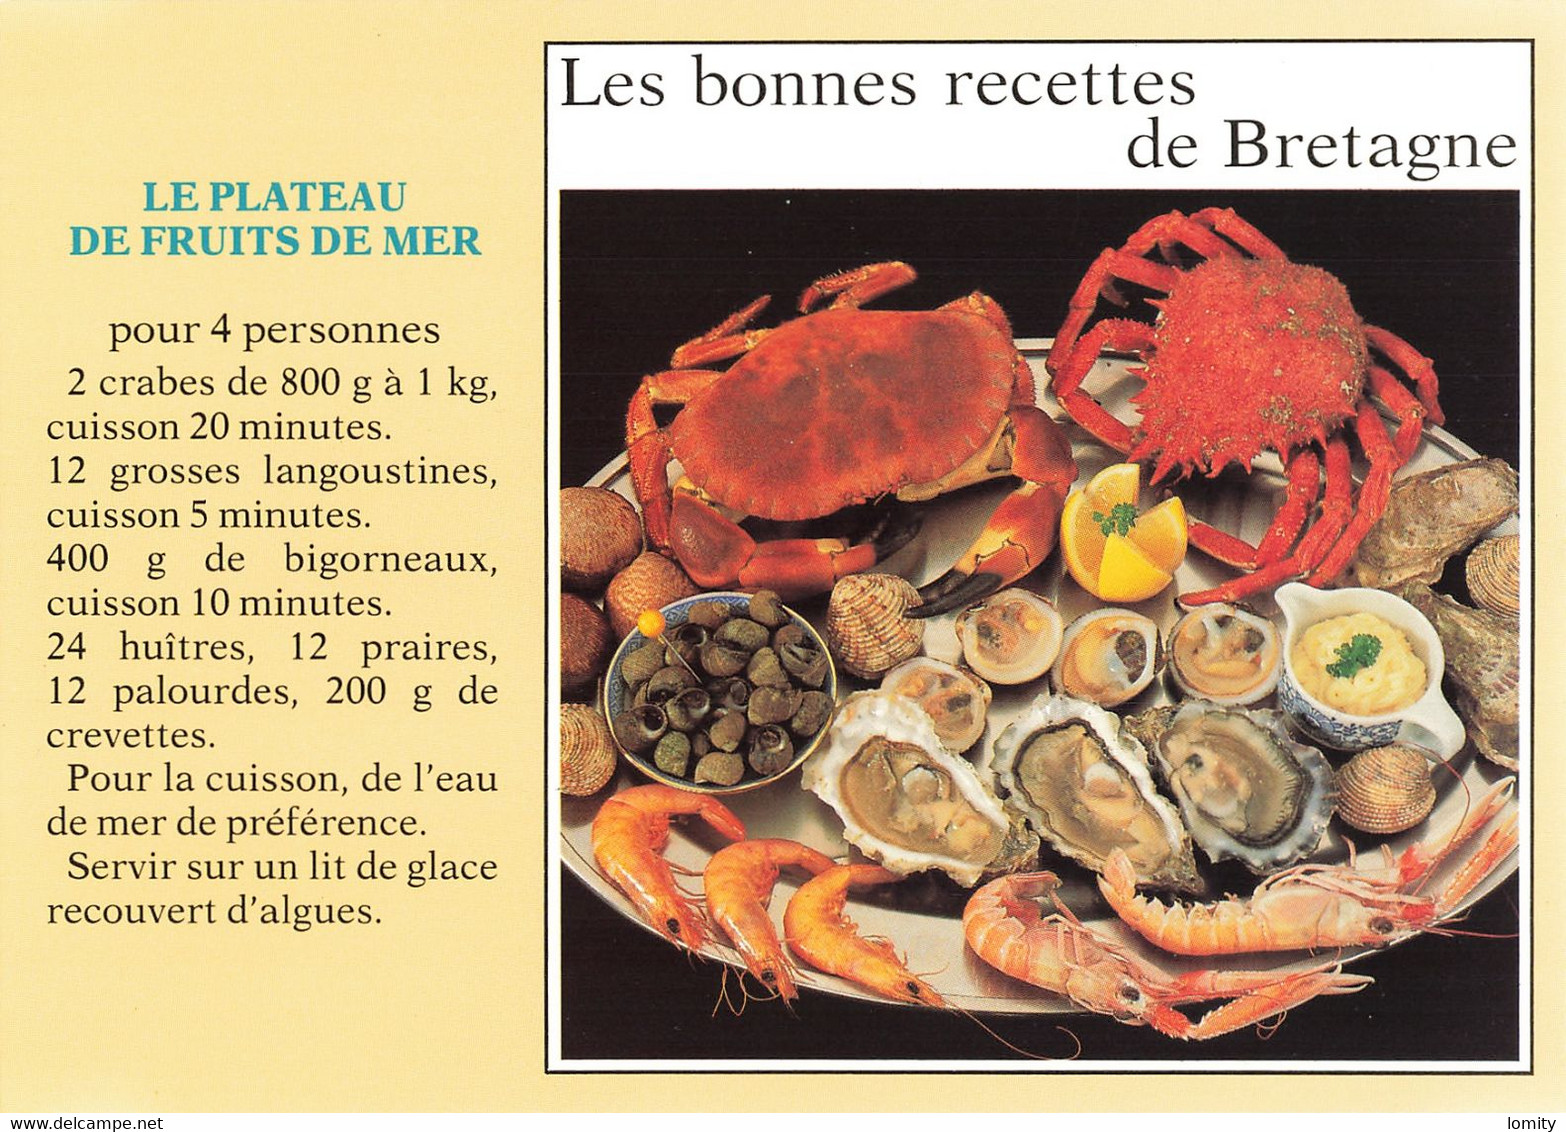 lot 12 cartes postales recette de cuisine CPM far breton kouign aman teurgoule potée soupe caillou huitres au cidre